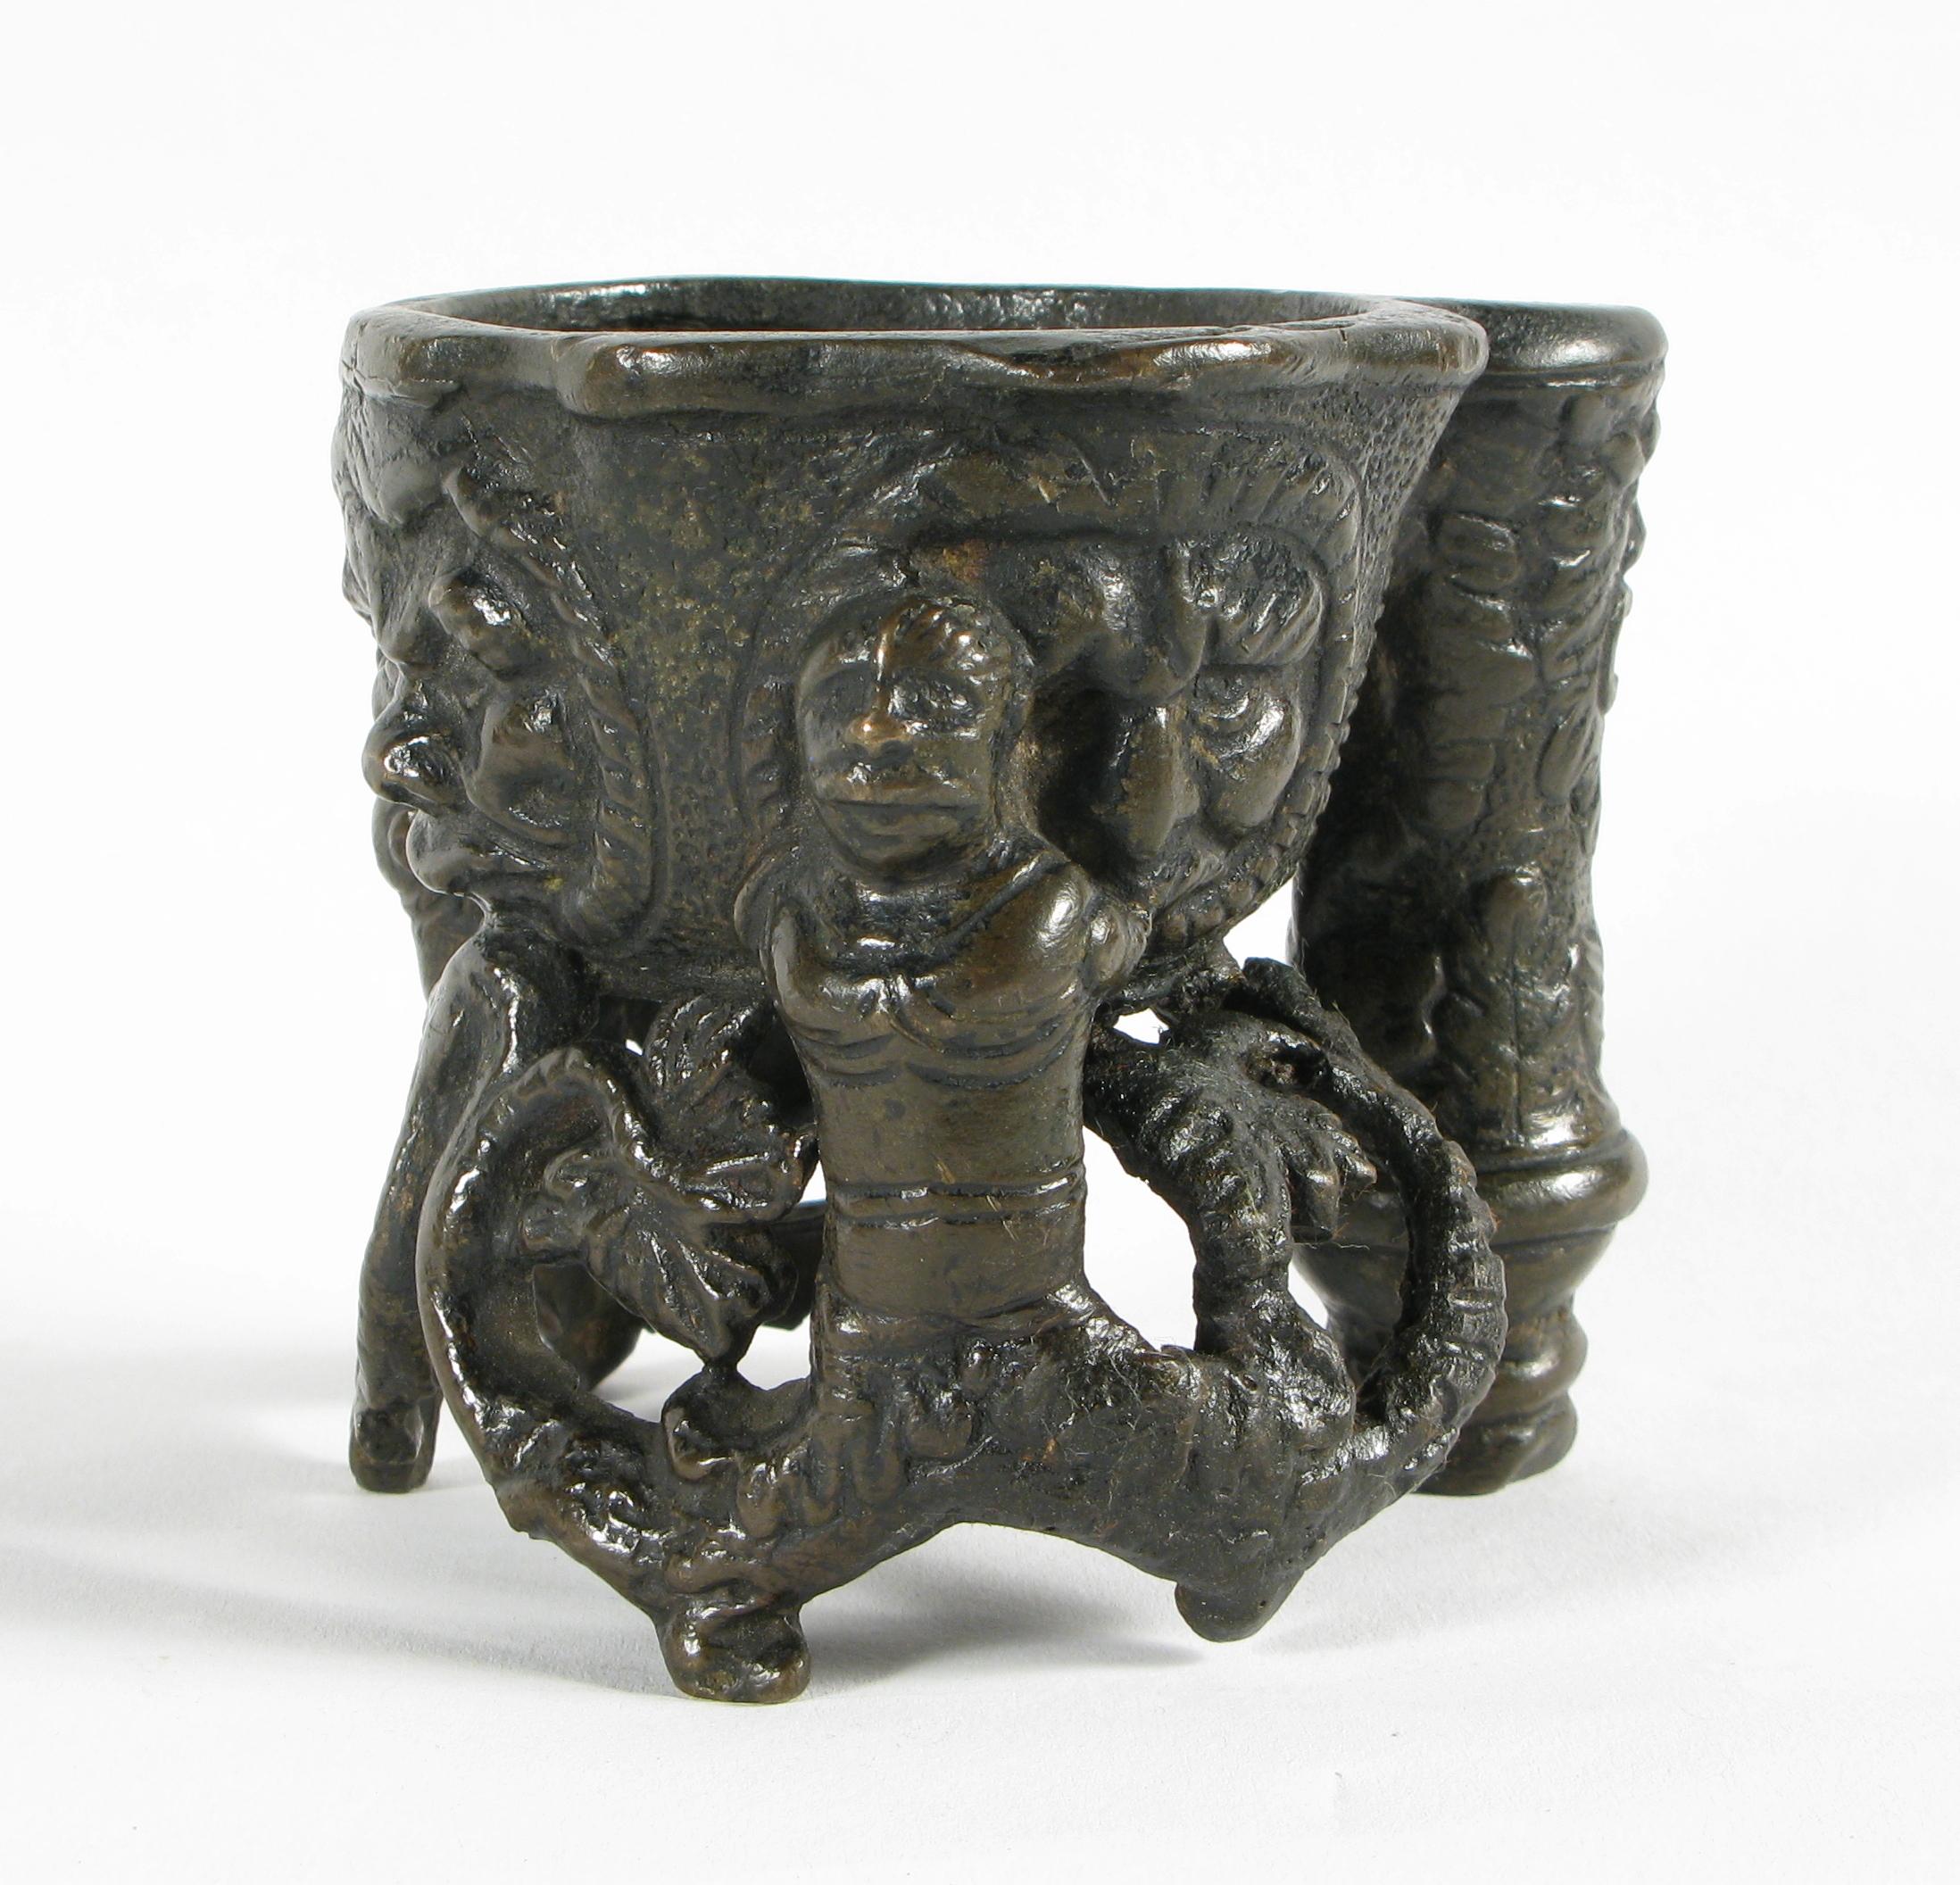 Encrier en bronze coulé à la cire perdue, XVIe siècle

Vase central de forme ovale pour l'encre, magistralement décoré par quatre masques aux physionomies et expressions différentes.
 
A l'appui, deux Sirenes dont les queues se terminent par des